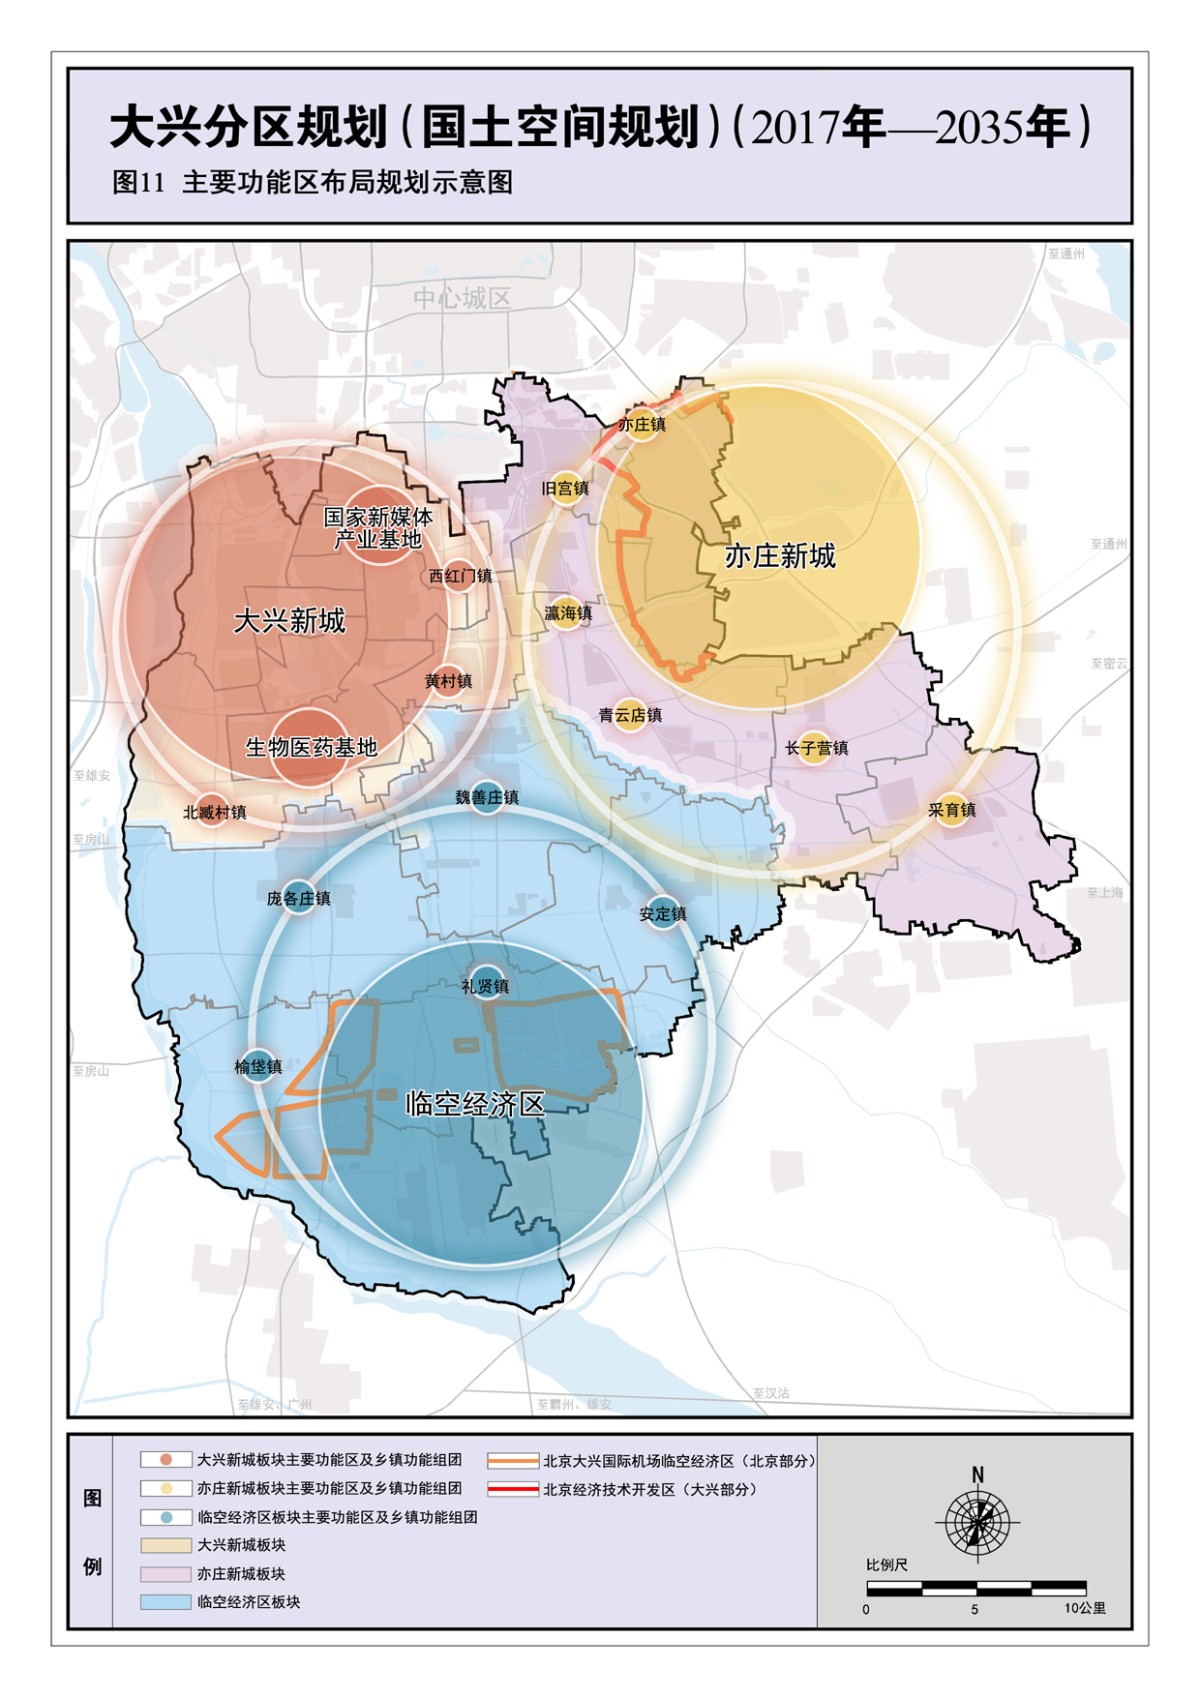 北京大兴分区规划全文发布 三城引领推进区域协